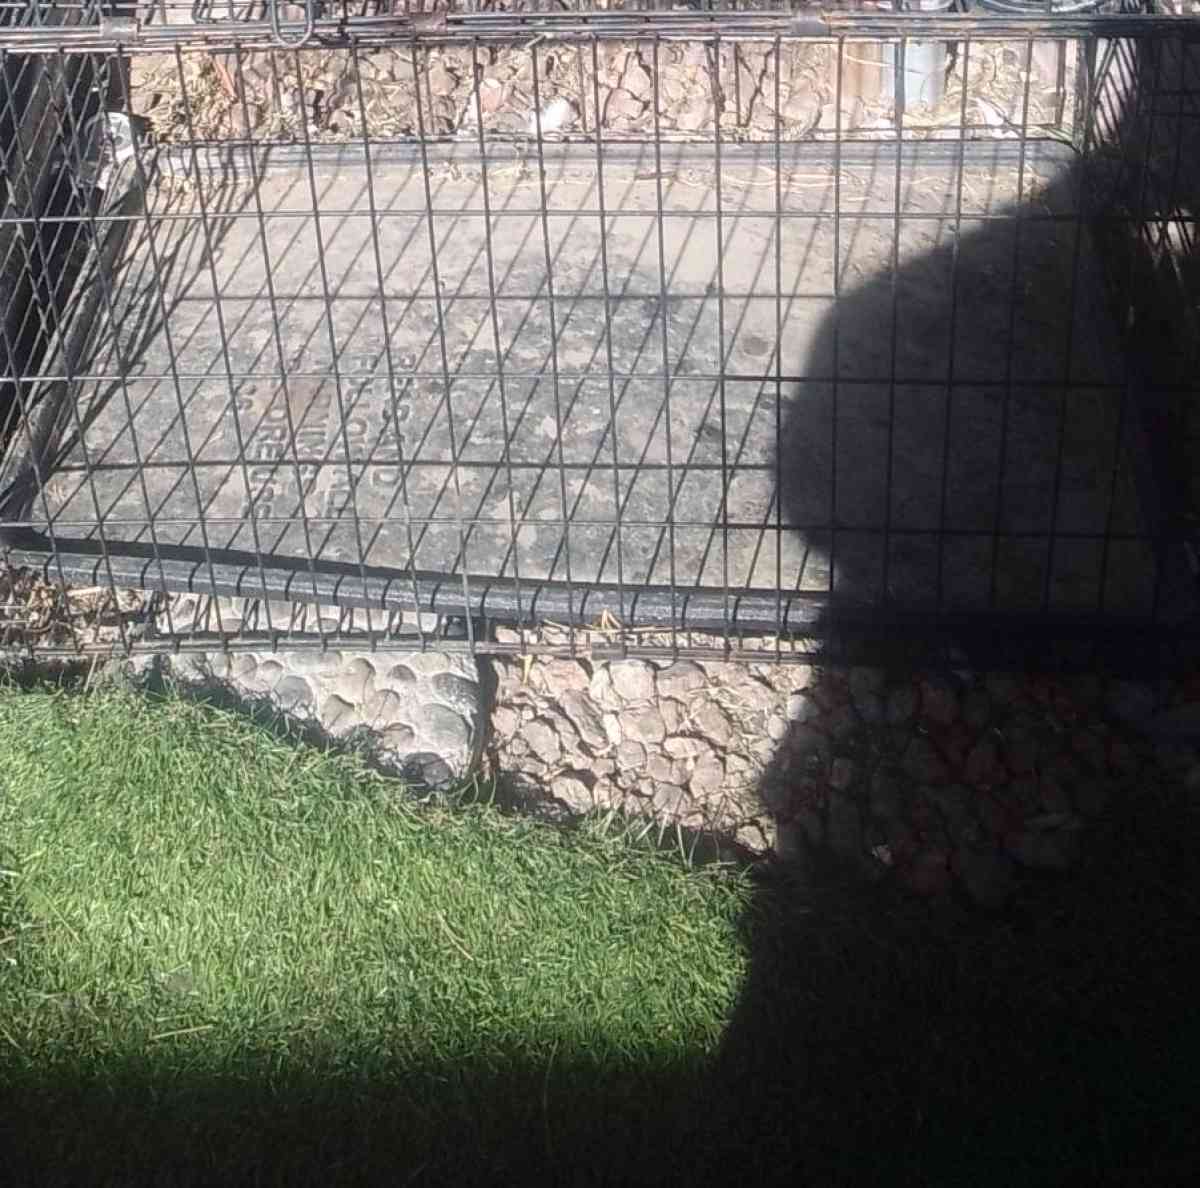 Dog Kennels Cages